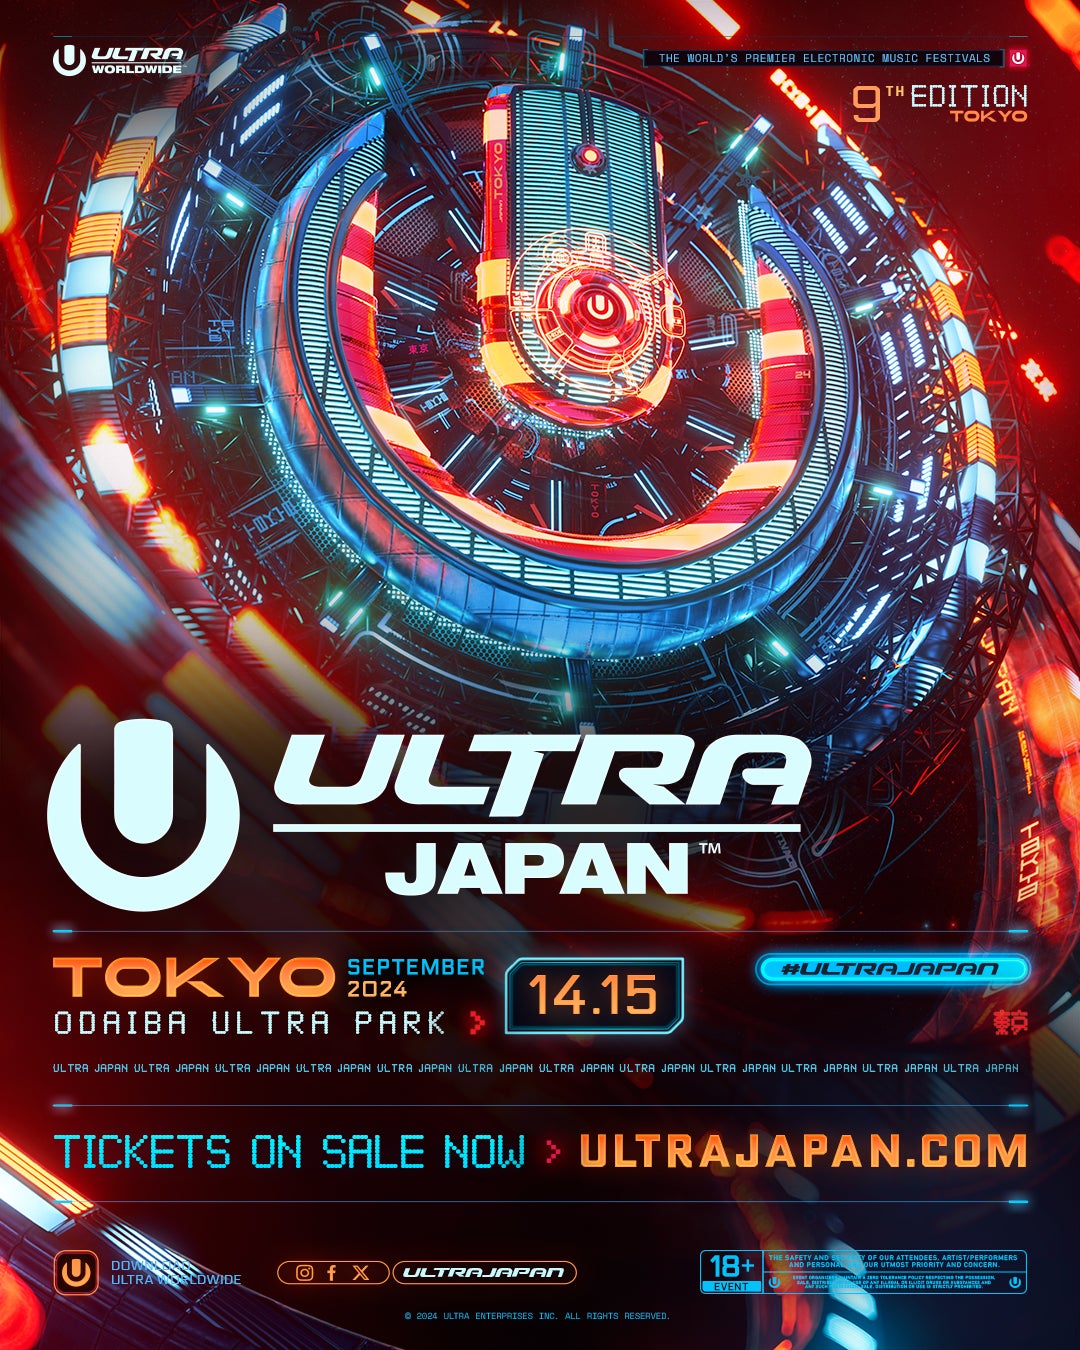 都市型ダンスミュージックフェスティバル、「ULTRA JAPAN 2024」1日券を含めたオフィシャル先着先行第二弾チケットを販売開始。